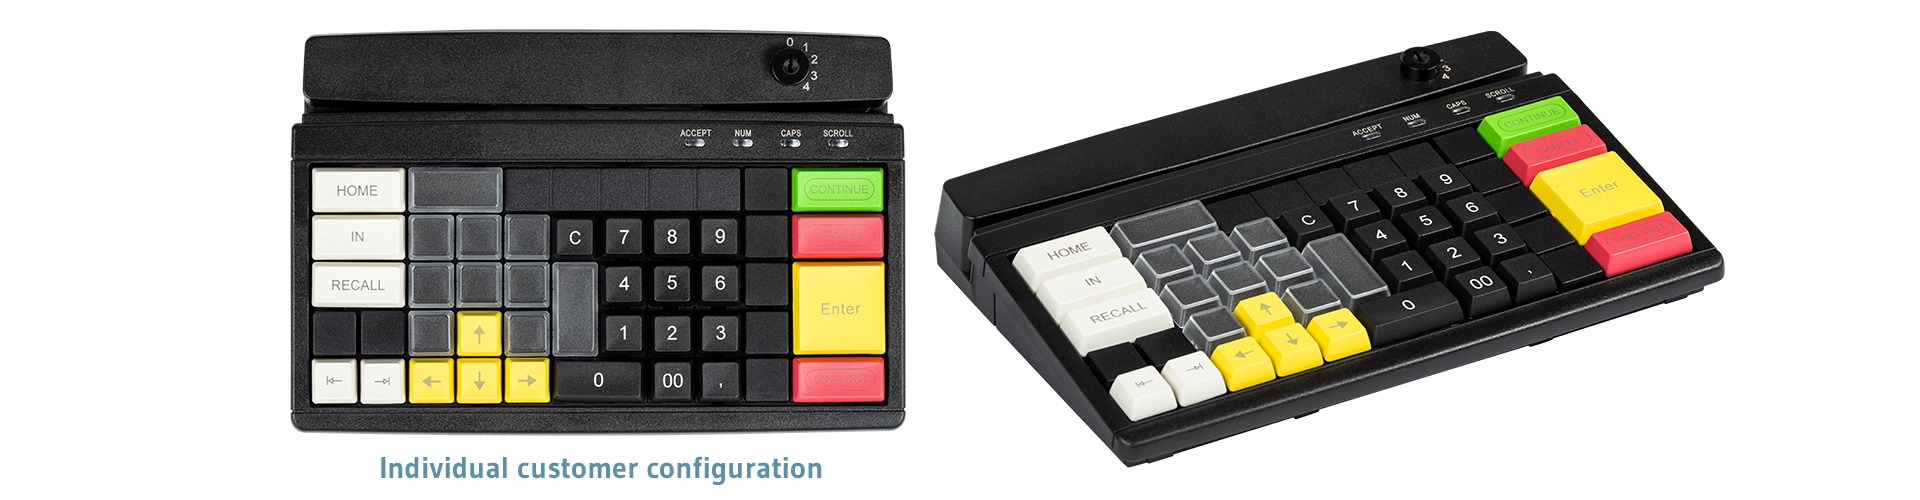 Programmable Cash Register Keyboard with Key Lock